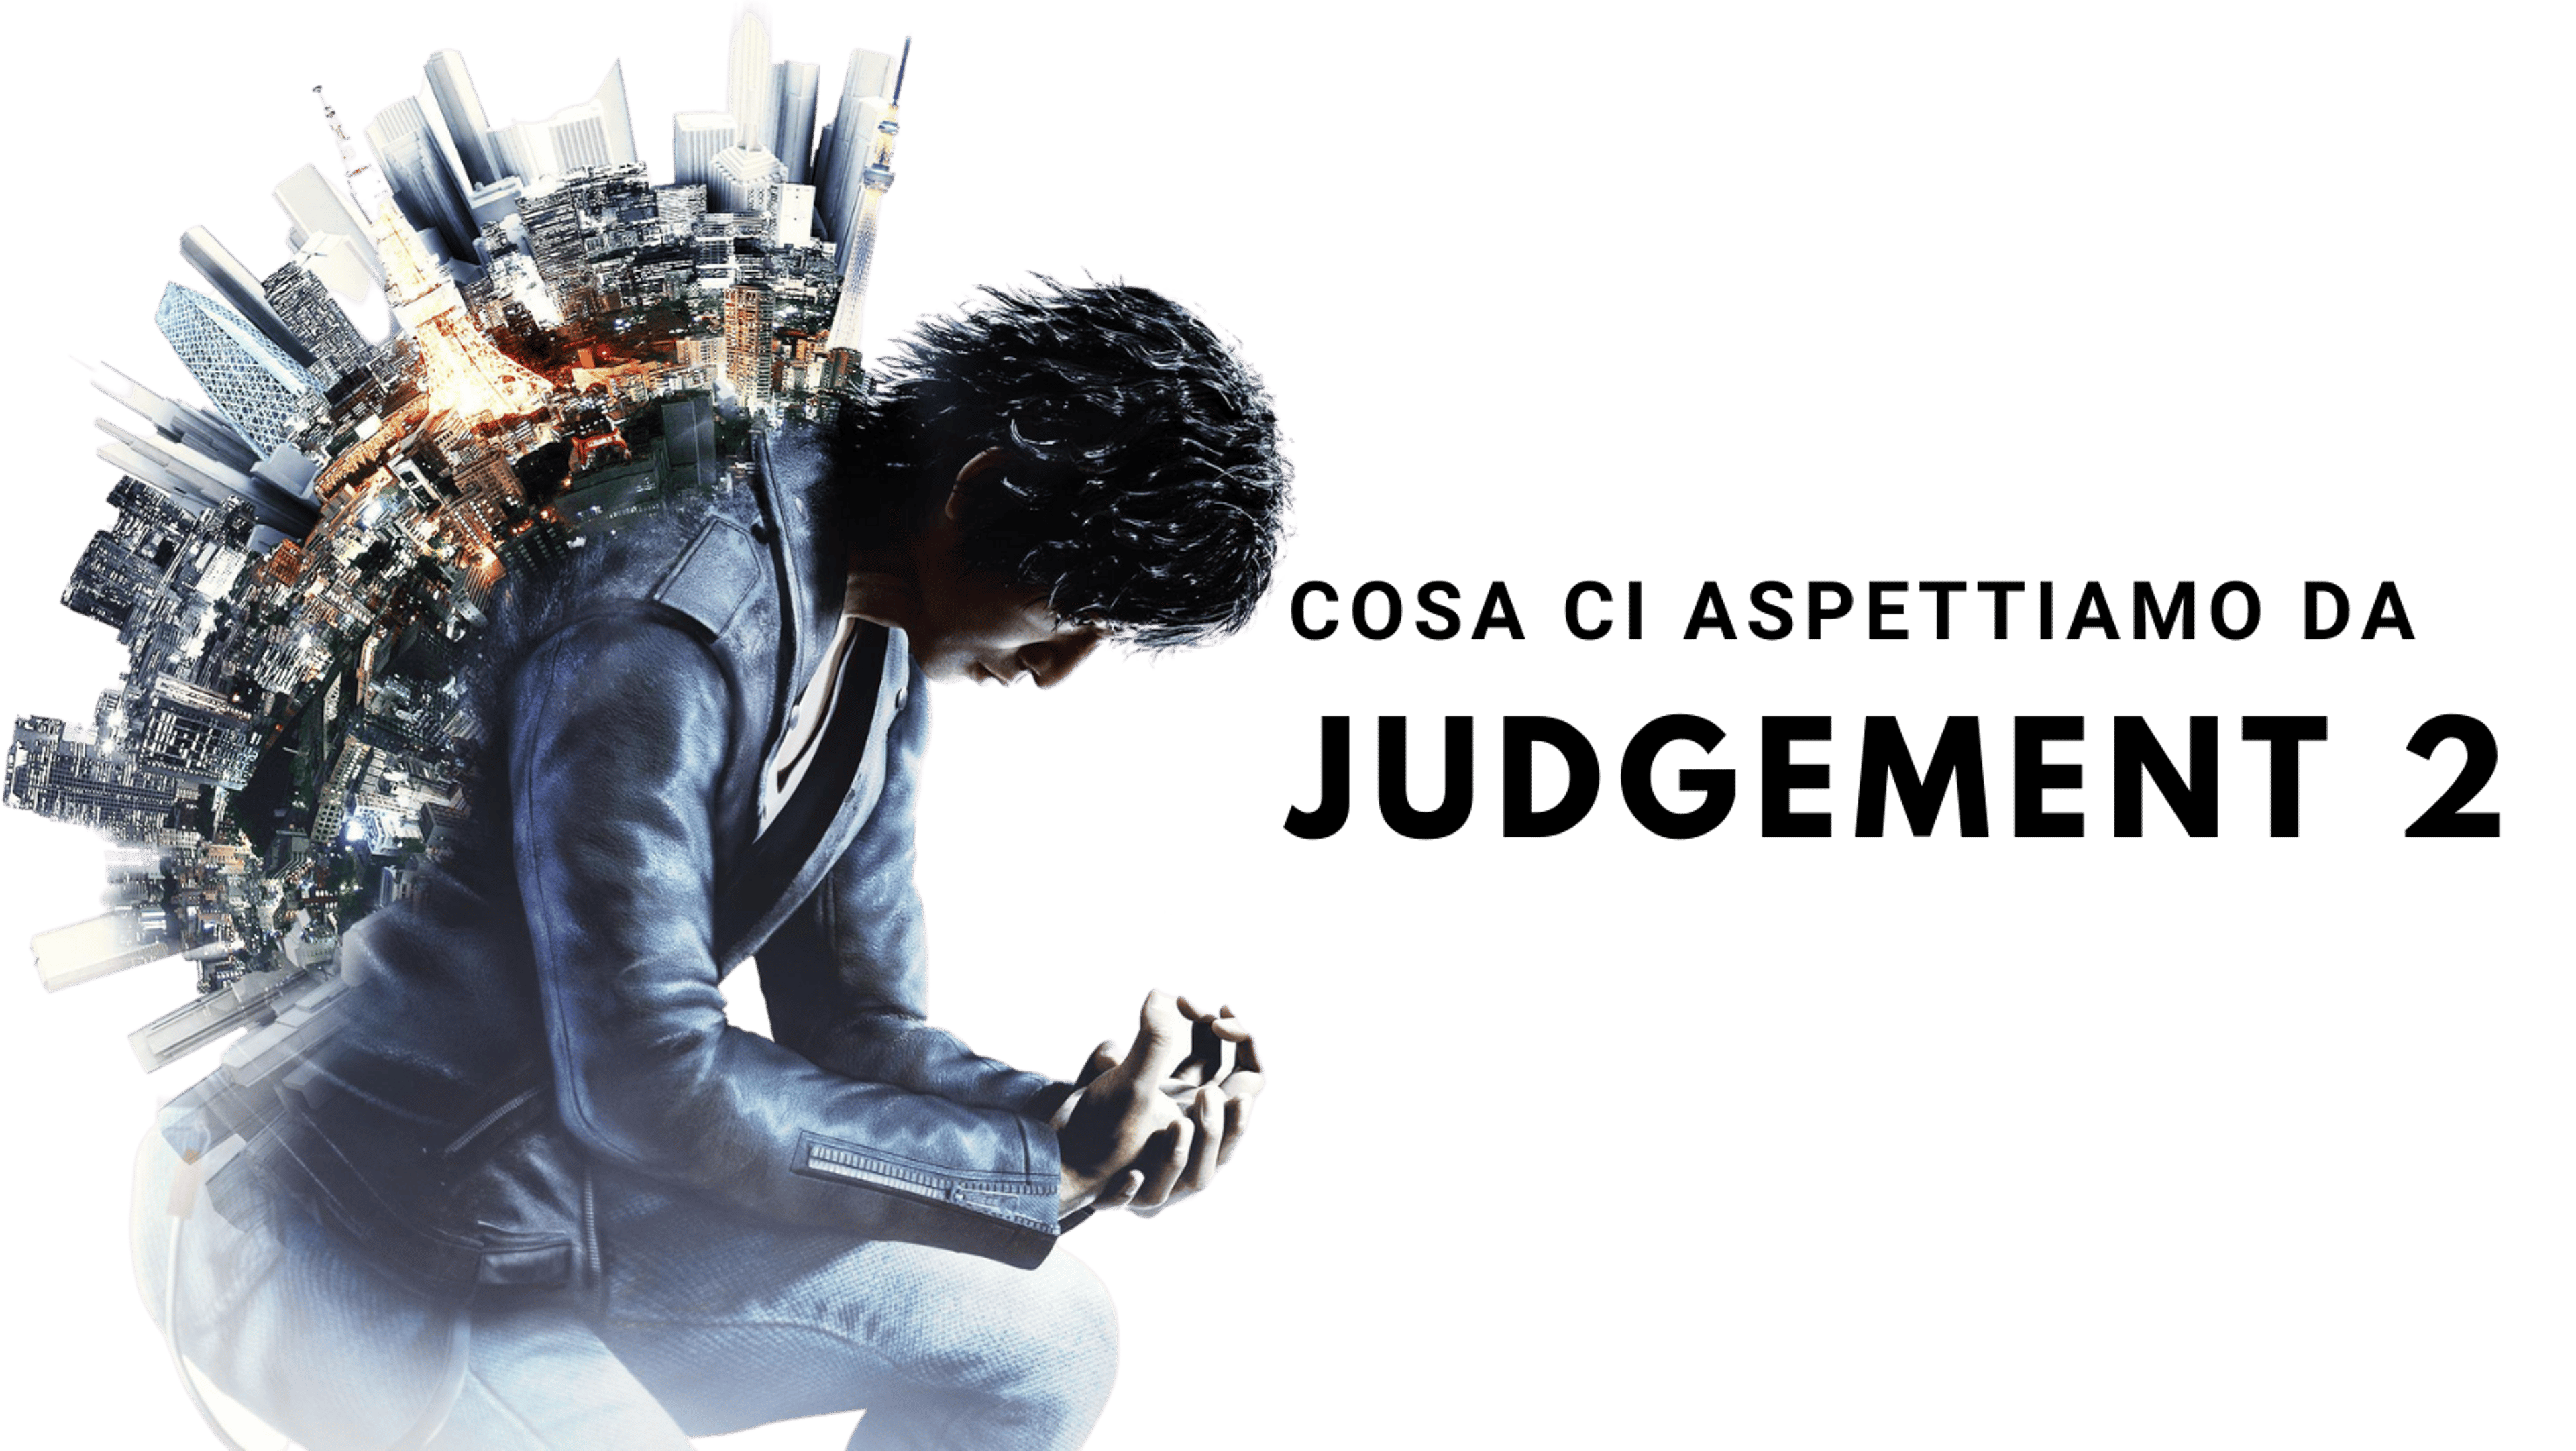 Judgement 2 – Cosa ci aspettiamo